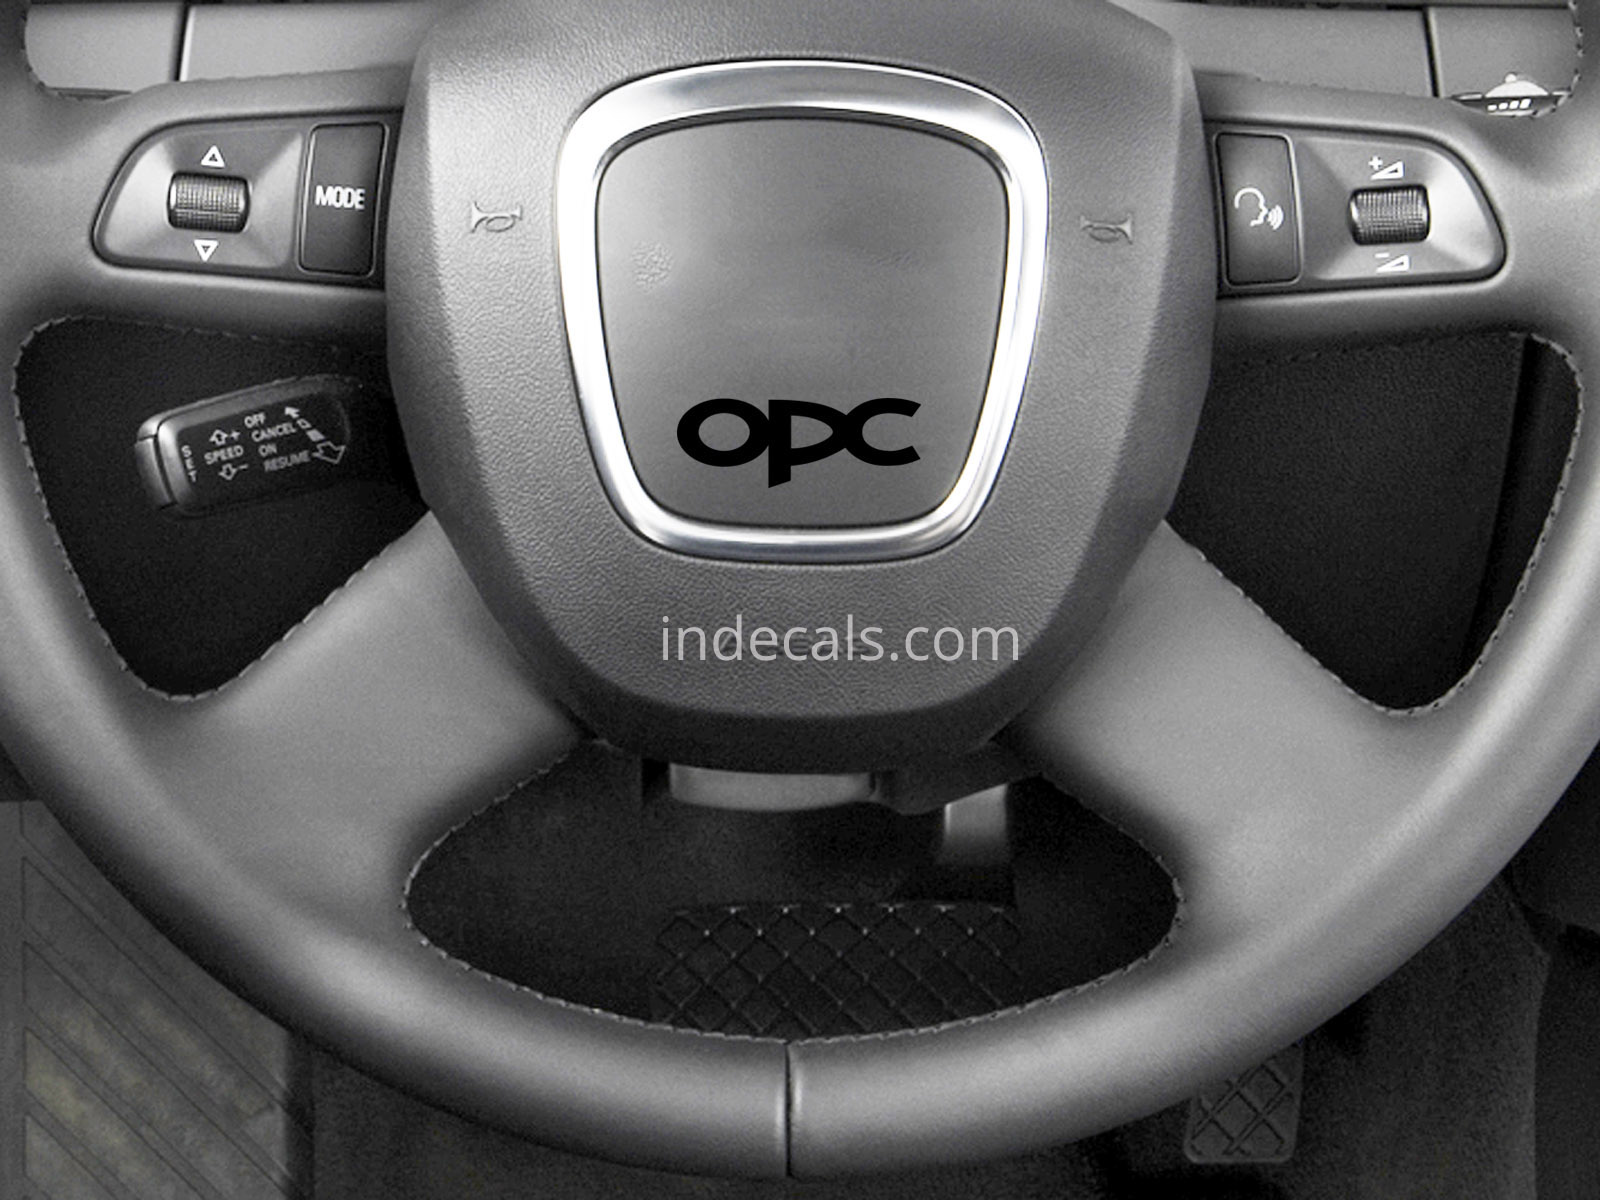 3 x Opel OPC Stickers for Steering Wheel - Black